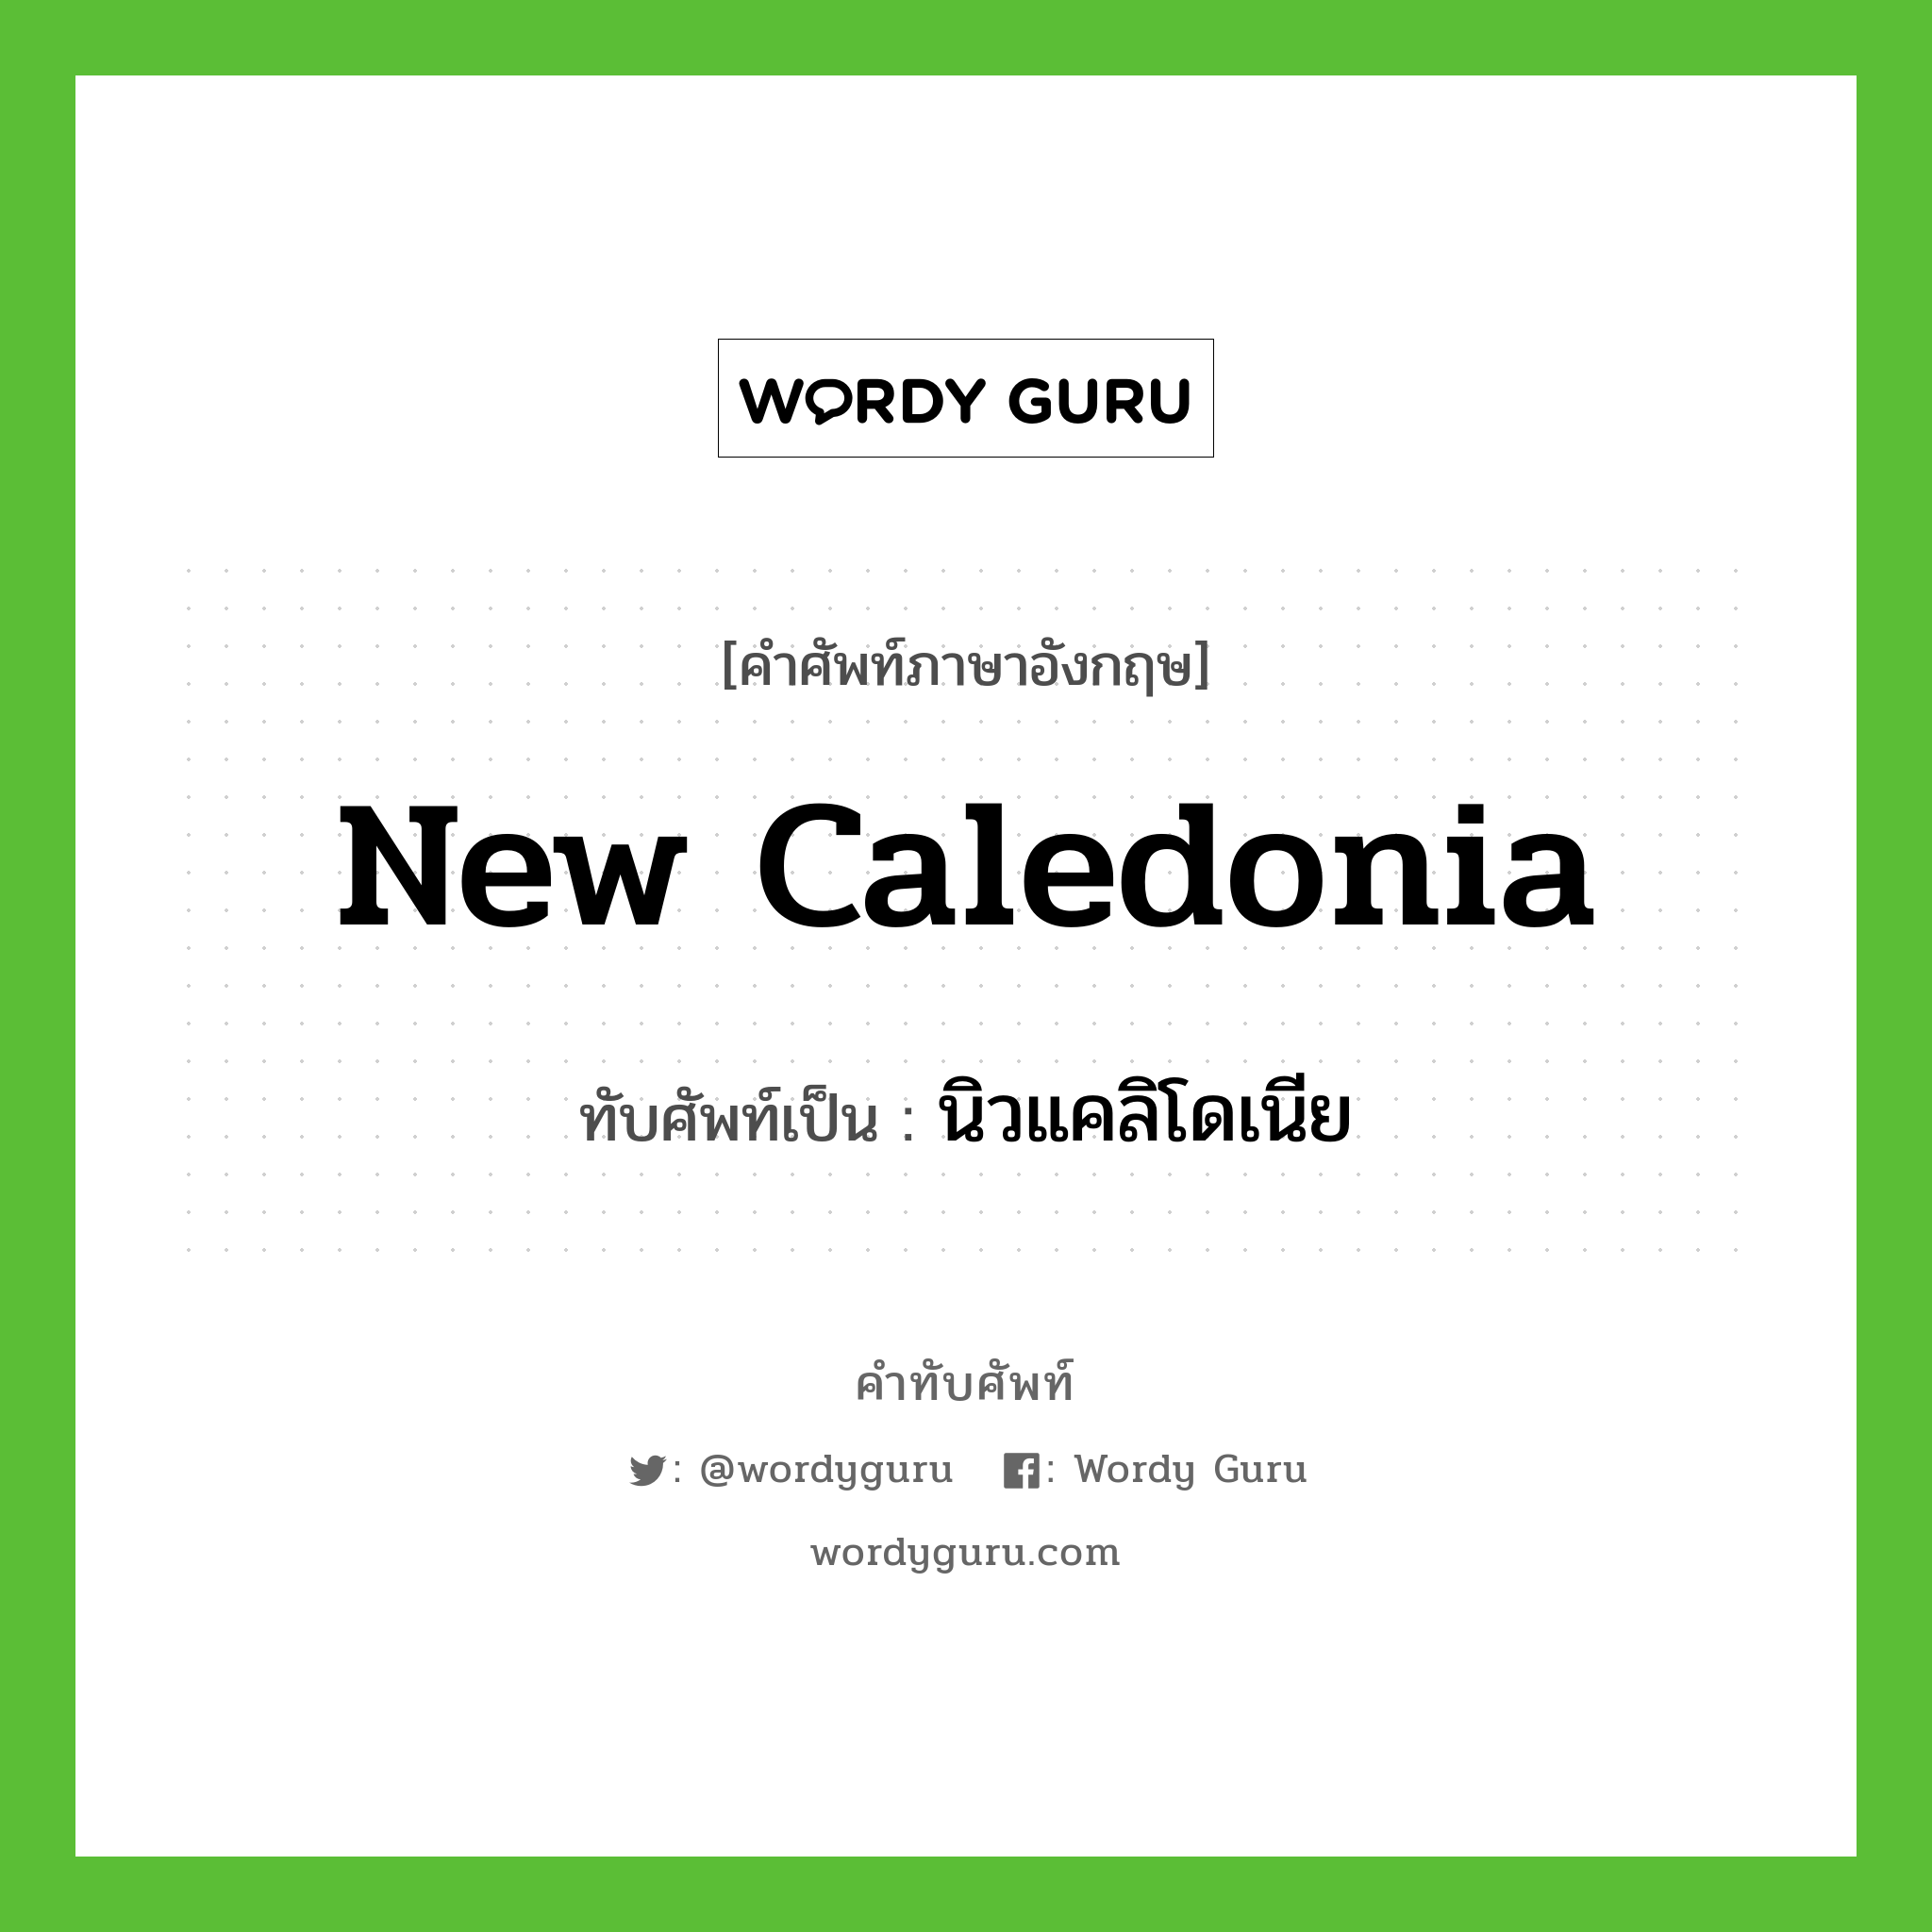 New Caledonia เขียนเป็นคำไทยว่าอะไร?, คำศัพท์ภาษาอังกฤษ New Caledonia ทับศัพท์เป็น นิวแคลิโดเนีย